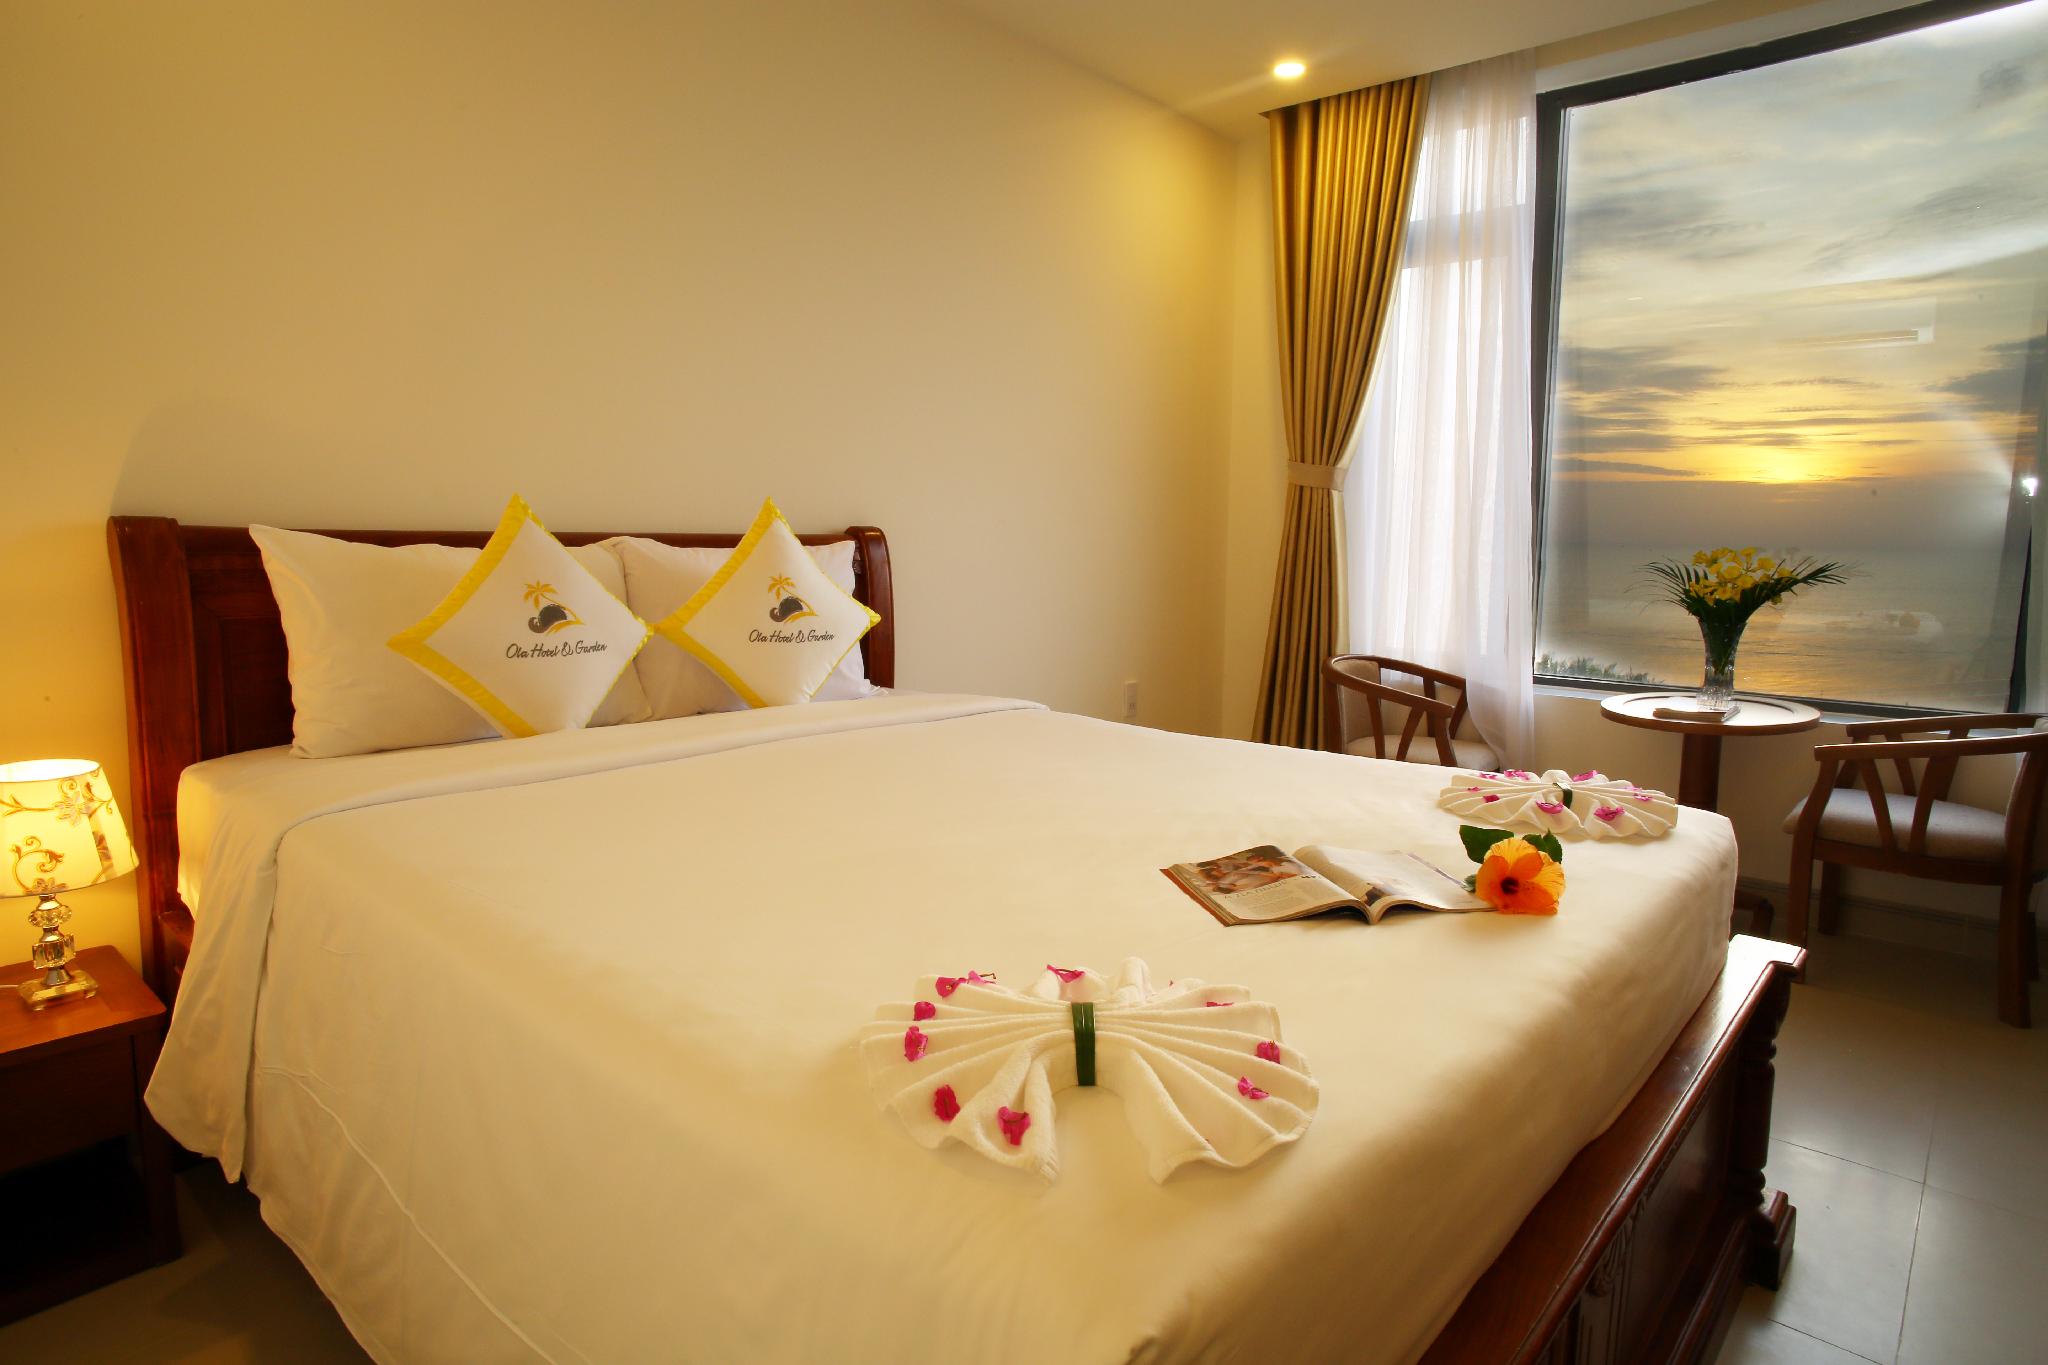 khach san o la phu quoc - Top 10 khách sạn 3 sao Phú Quốc giá tốt